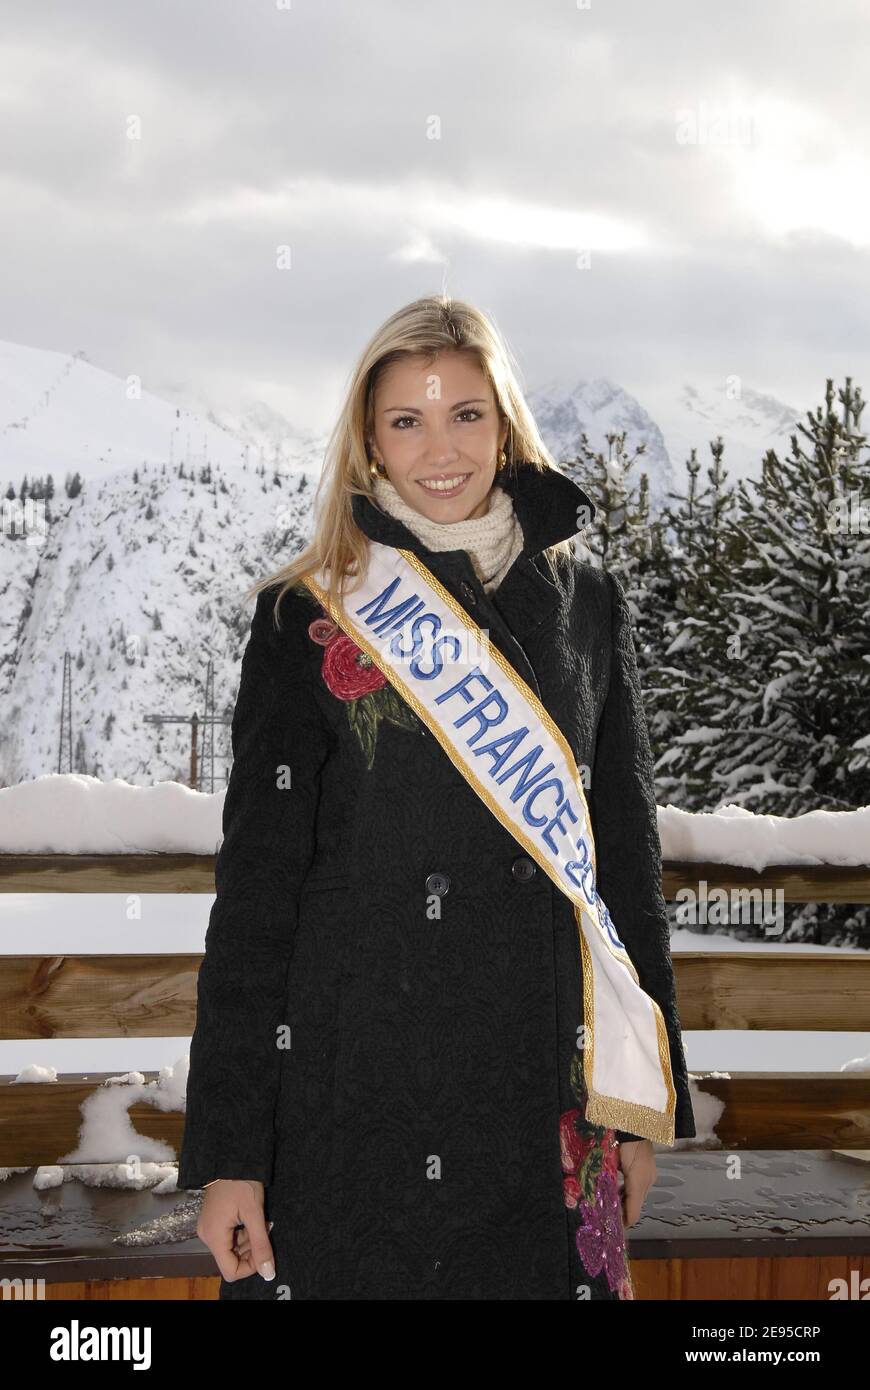 Miss France 2006 Alexandra Rosenfeld participe au 9ème Festival de l'humour et de la comédie de l'Alpe d'Huez dans les Alpes françaises le 18 janvier 2006. Photo de Bruno Klein/ABACAPRESS.COM Banque D'Images